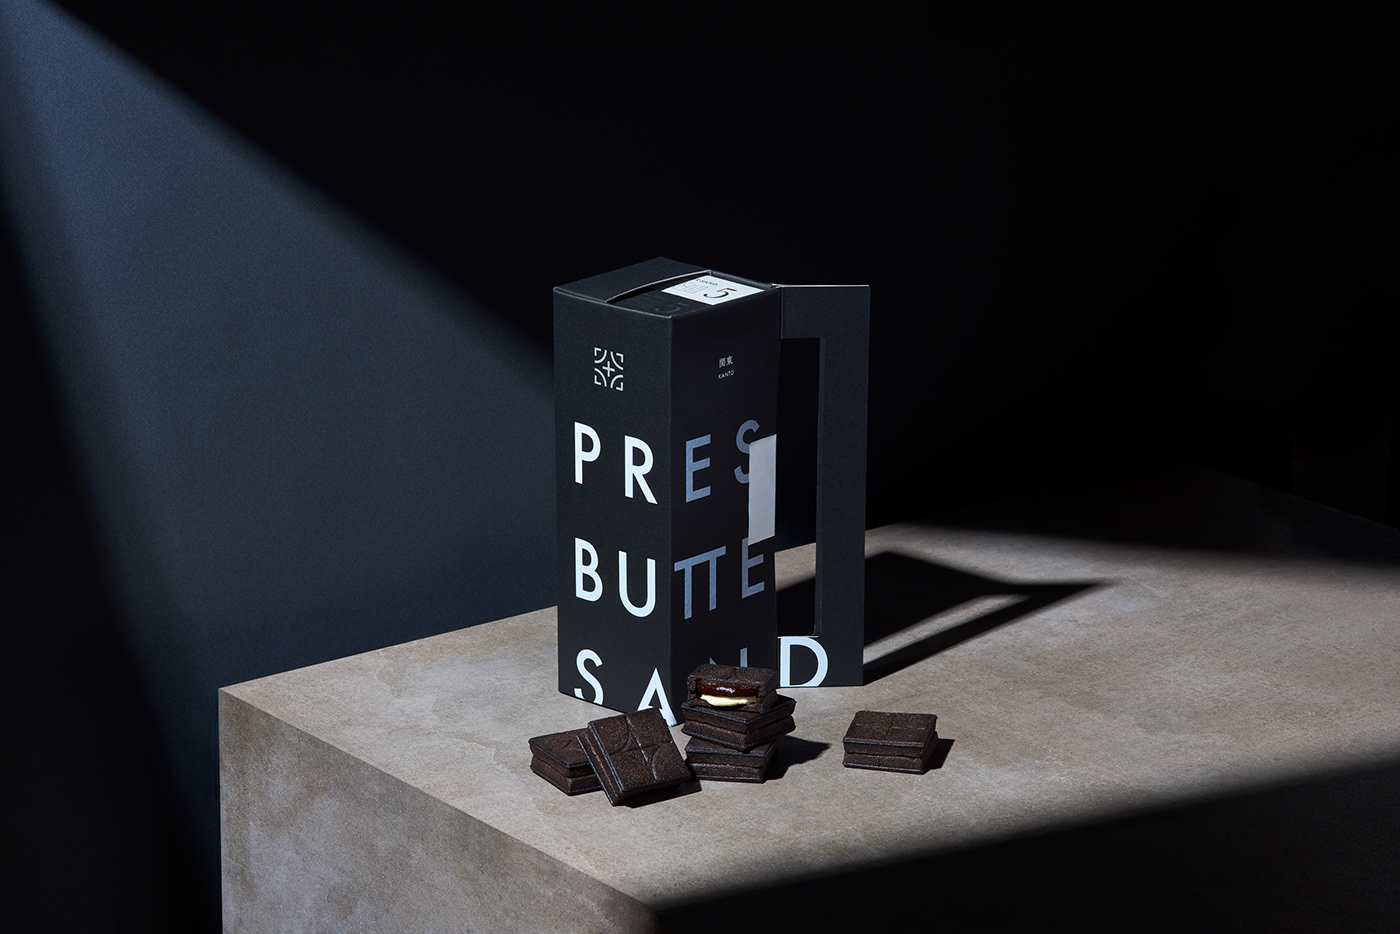 デザイン パッケージ Photography  branding  art direction  Bake Inc packaging design press butter sand